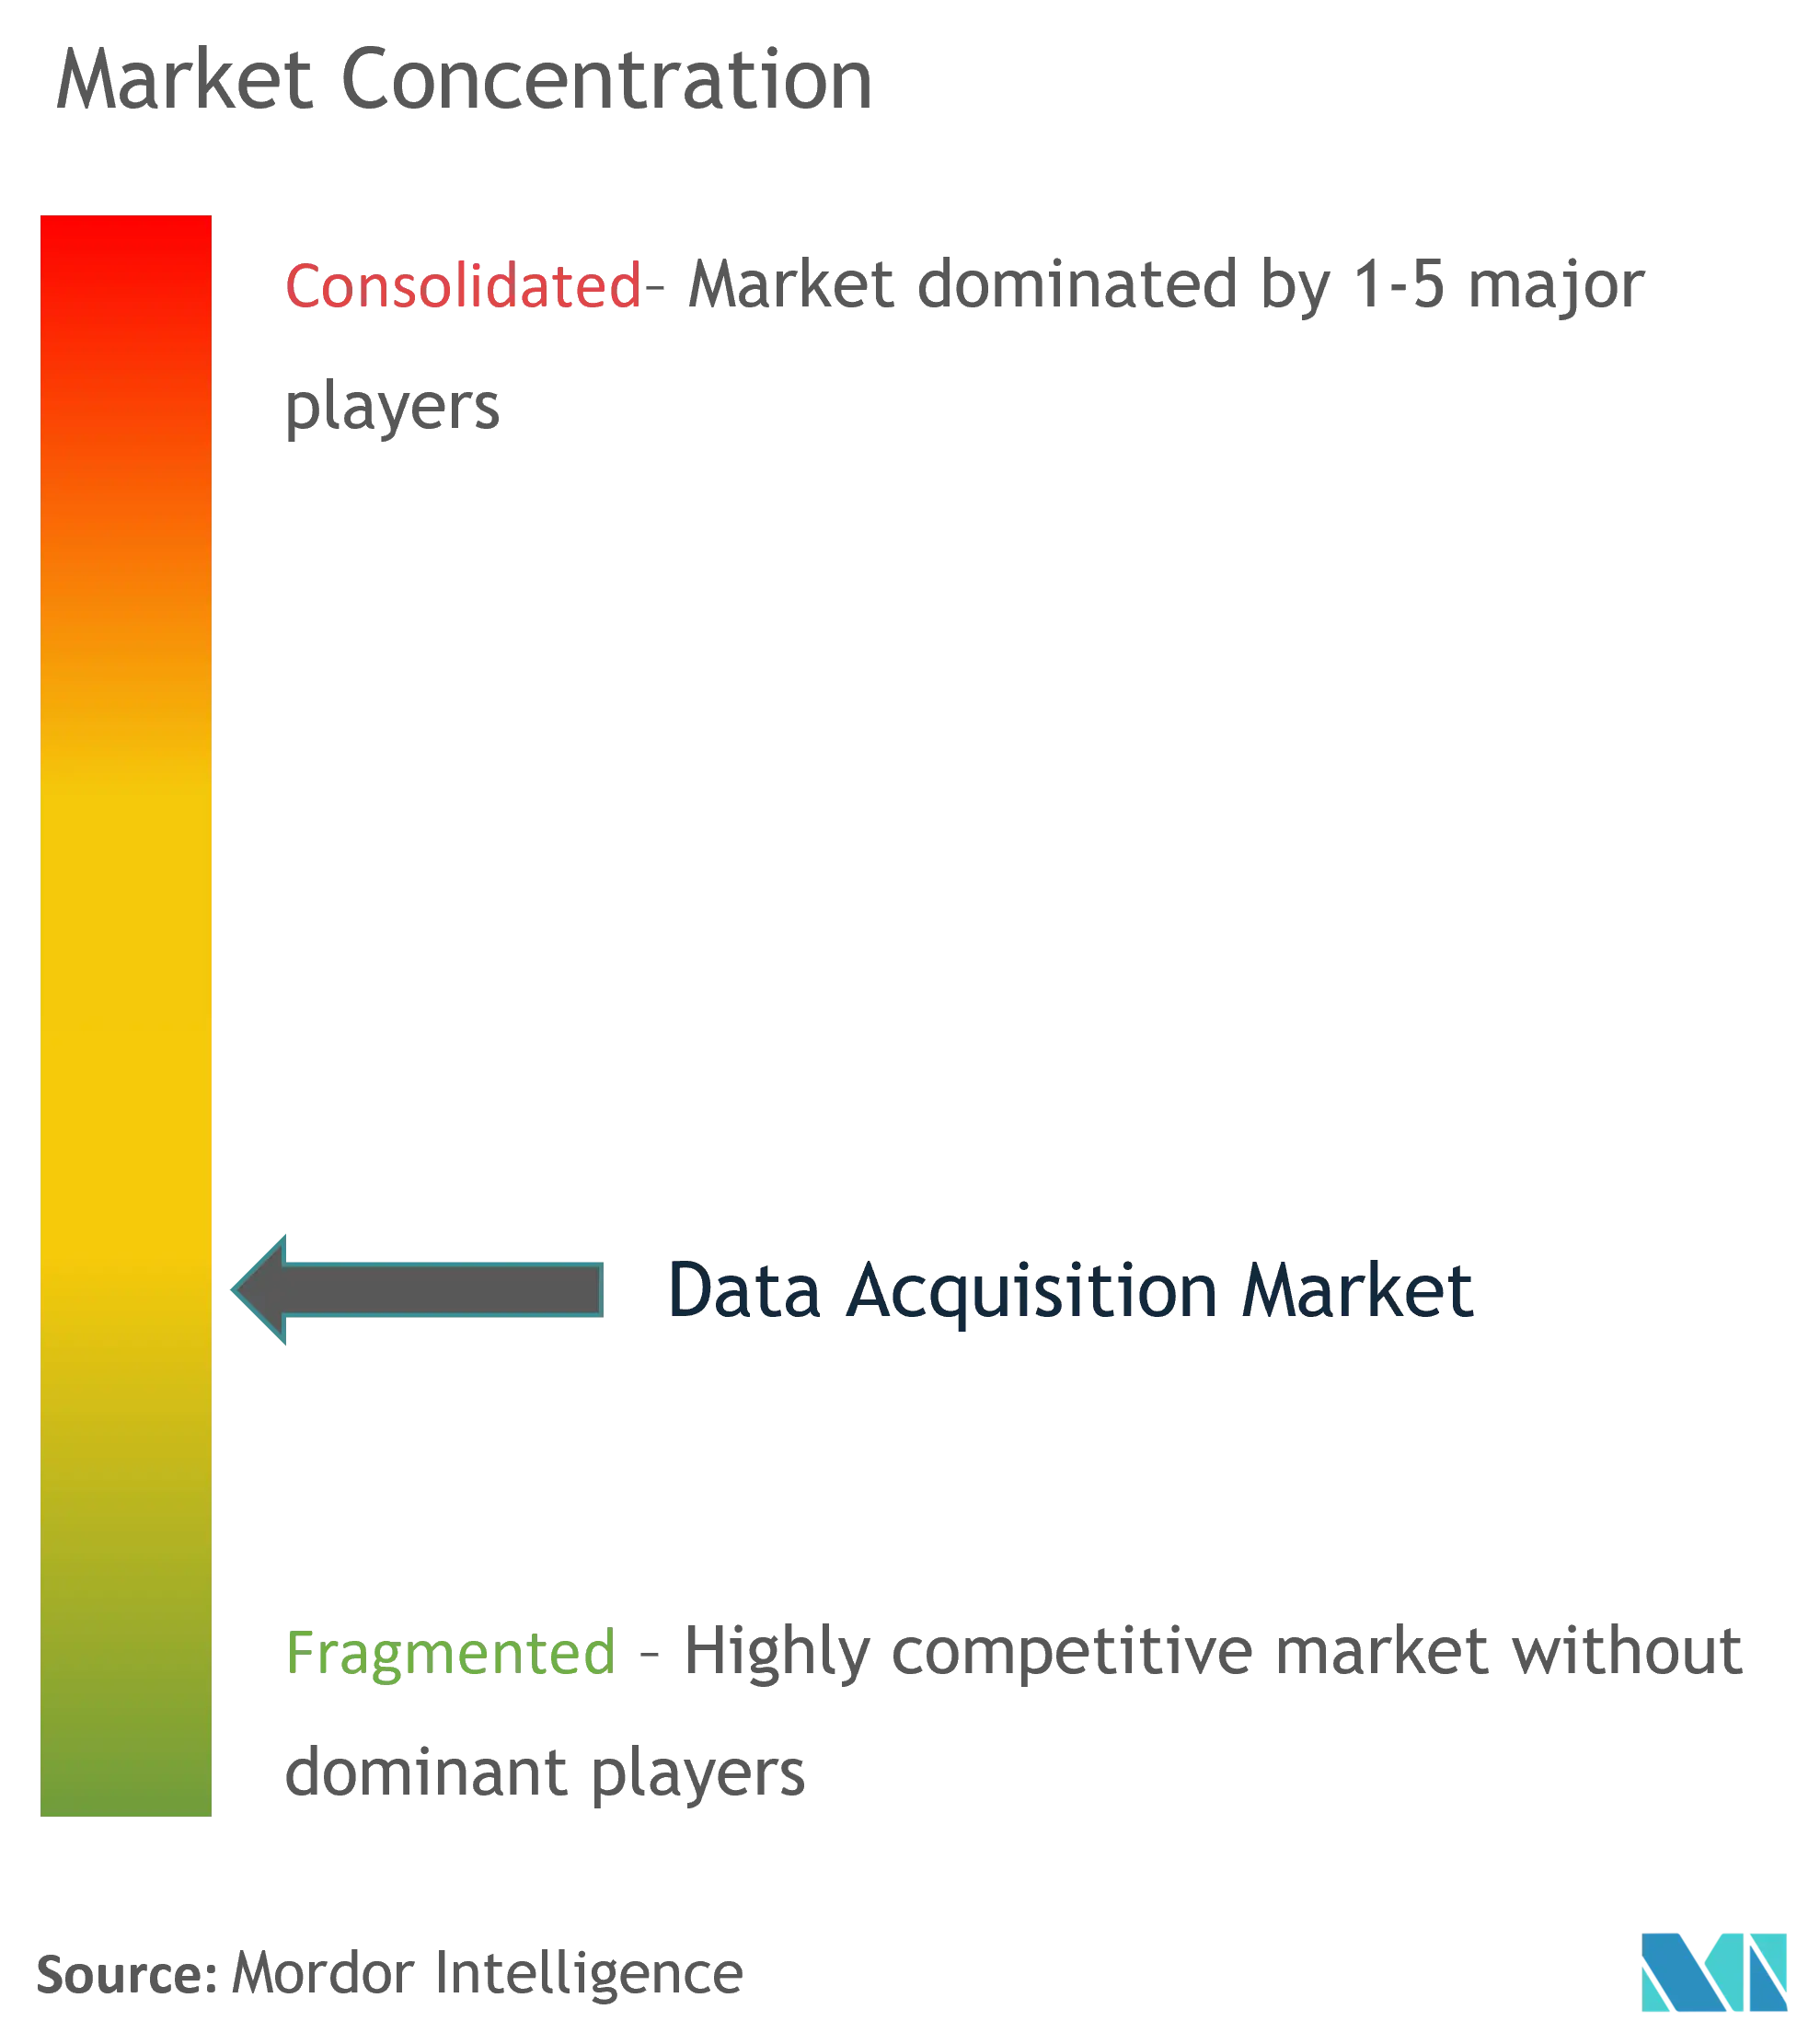 Data Acquisition Market - Market Concentration.png